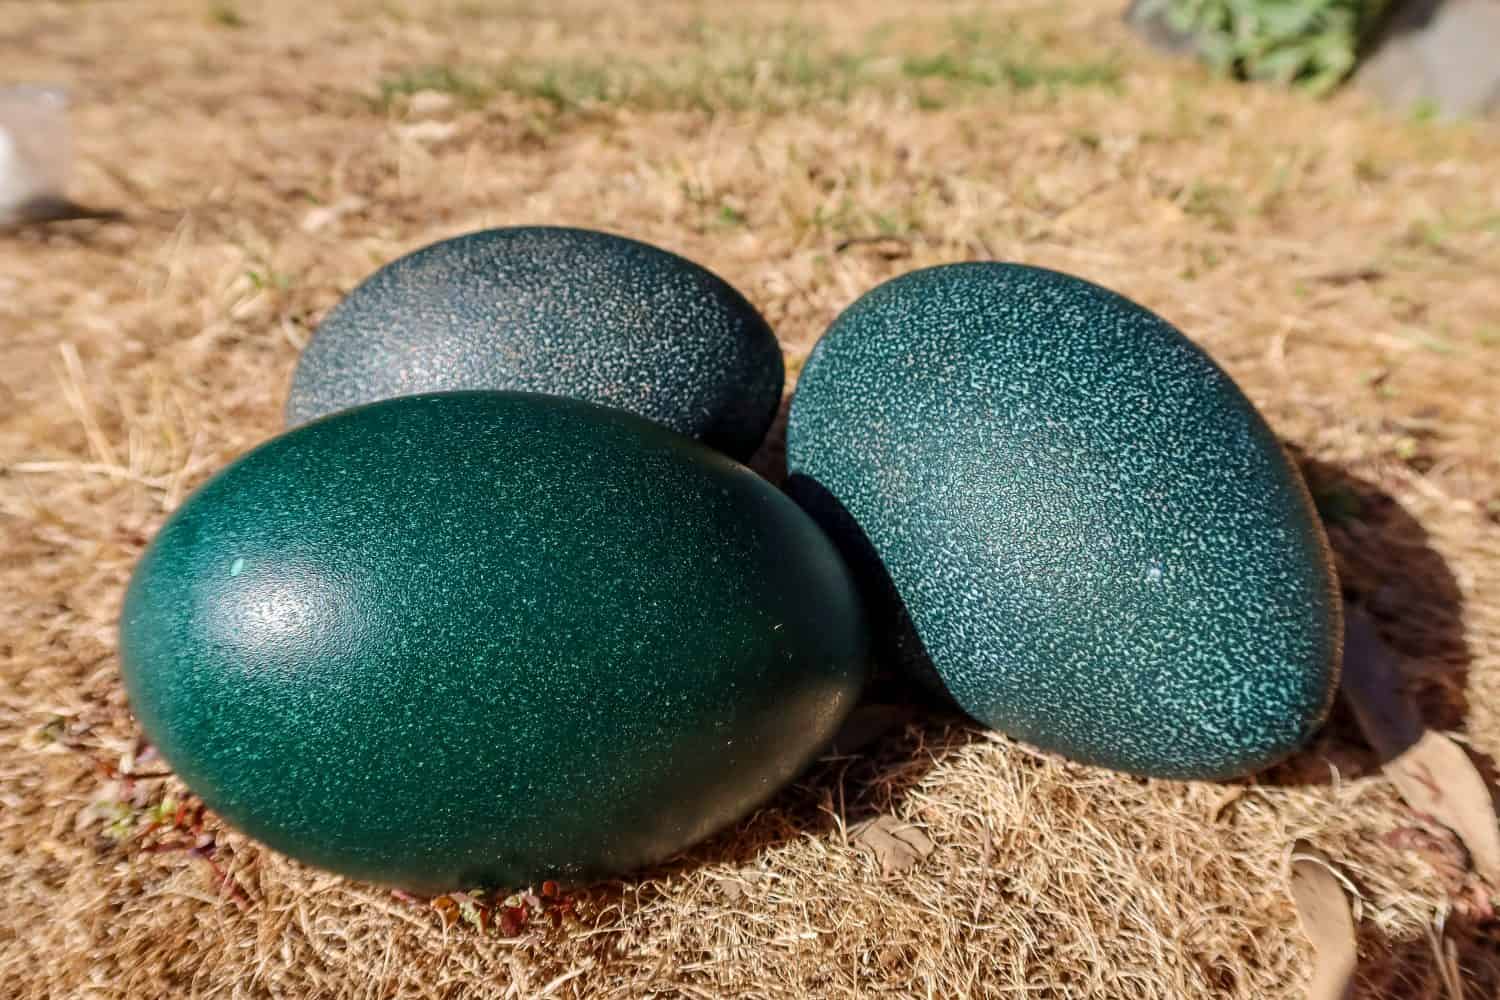 Tre uova verdi di emu sul terreno.  Australia.